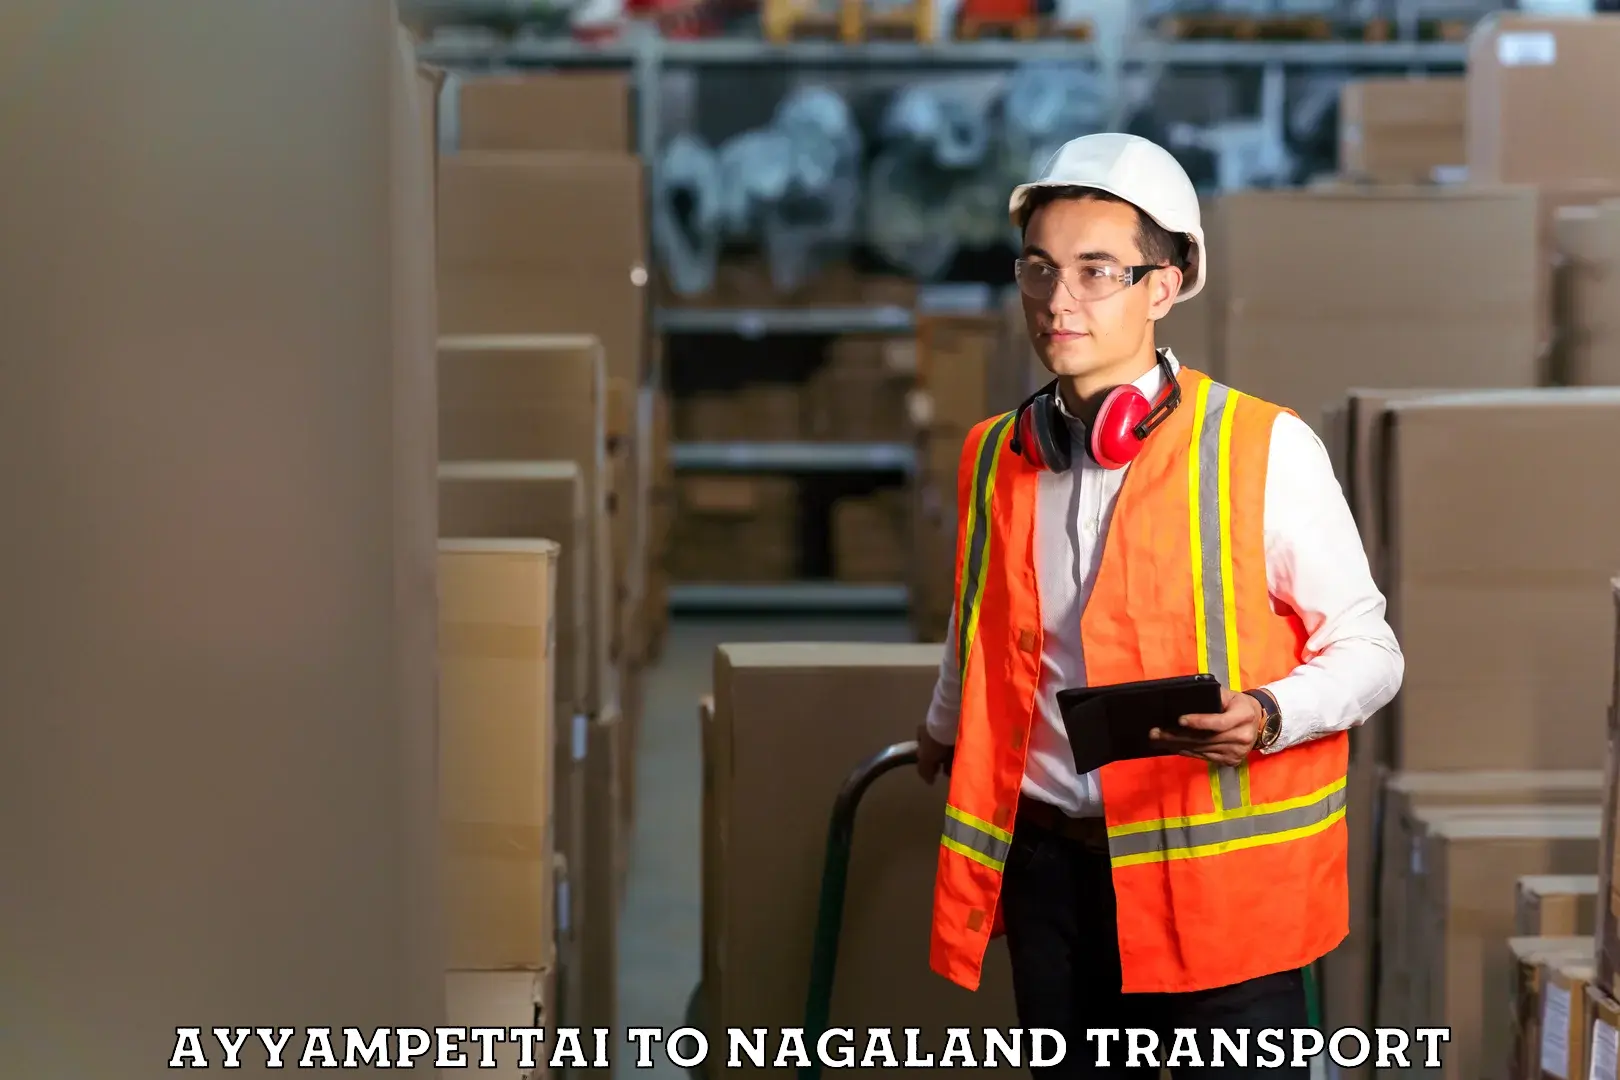 Online transport service Ayyampettai to Nagaland